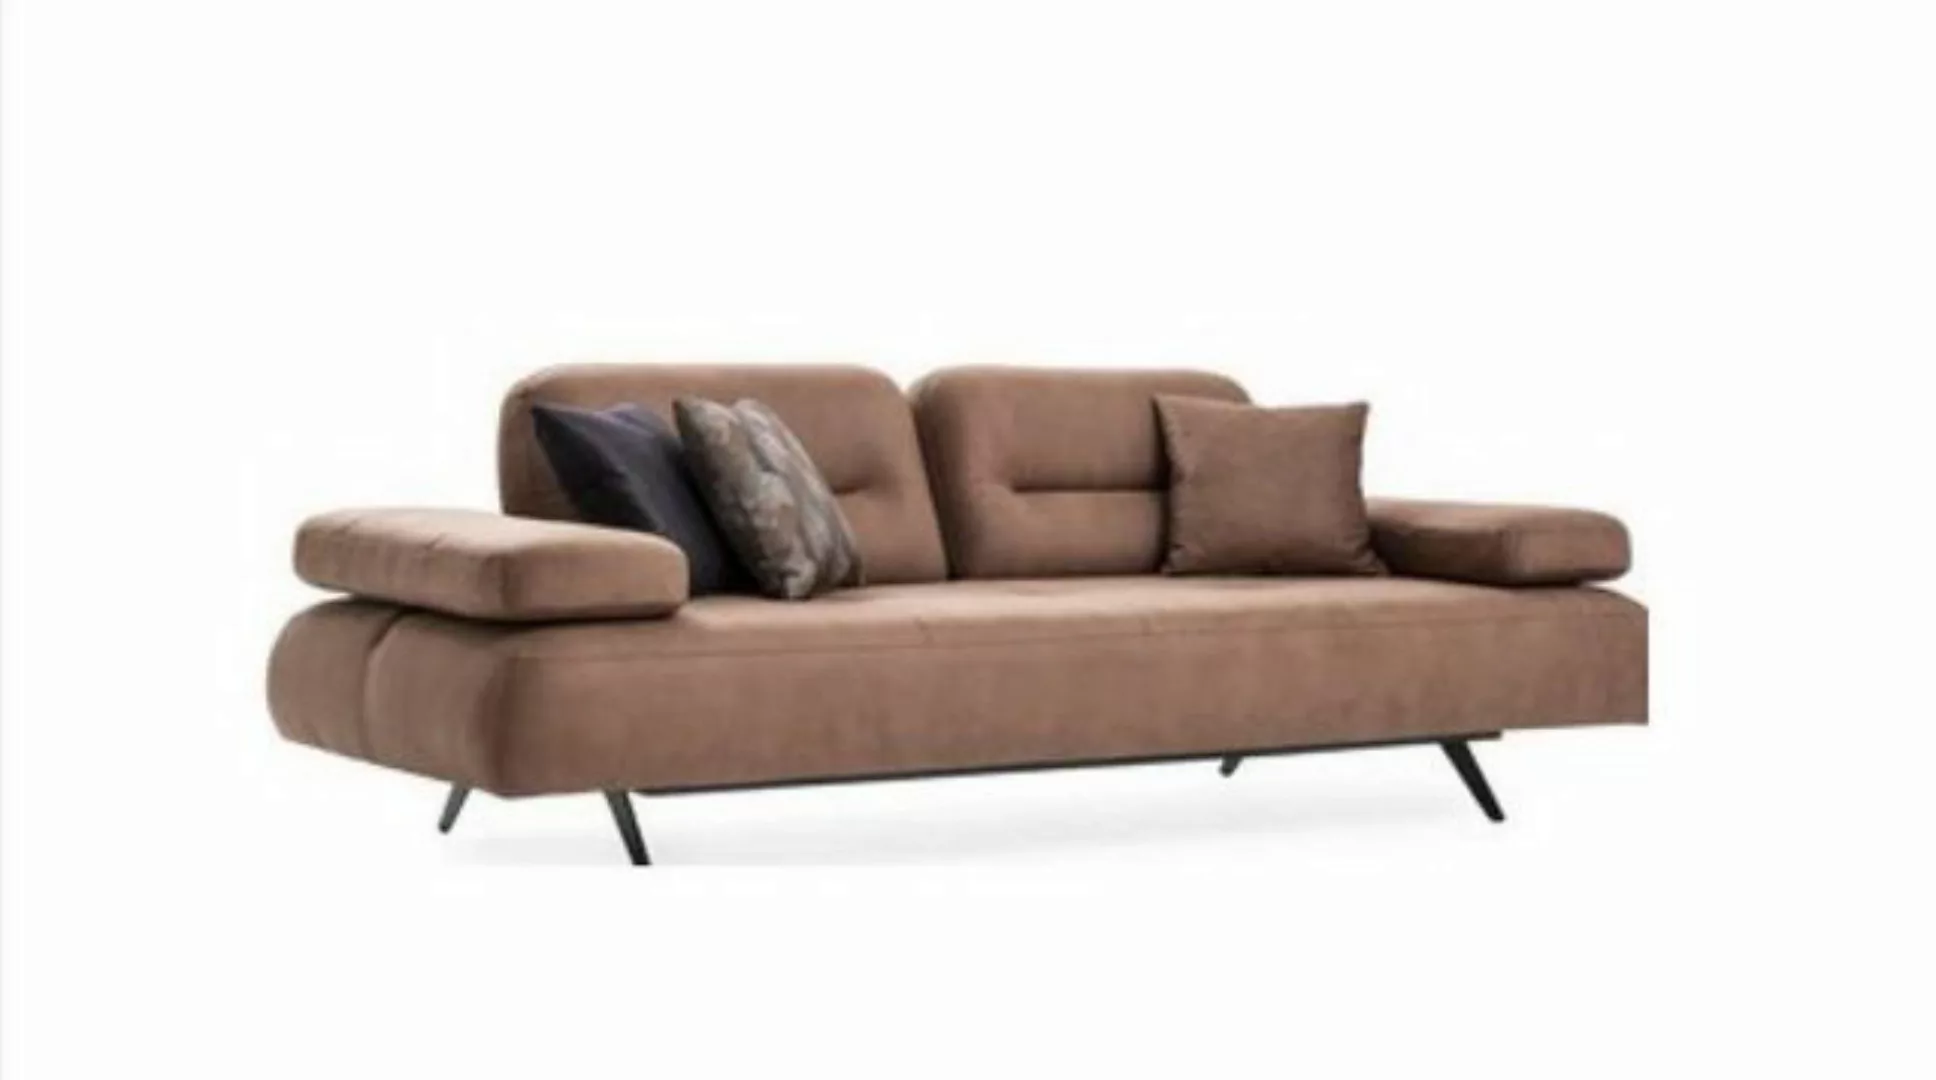 JVmoebel 3-Sitzer Design 3 Sitzer Sofa braun Couch Polster luxus Couchen So günstig online kaufen